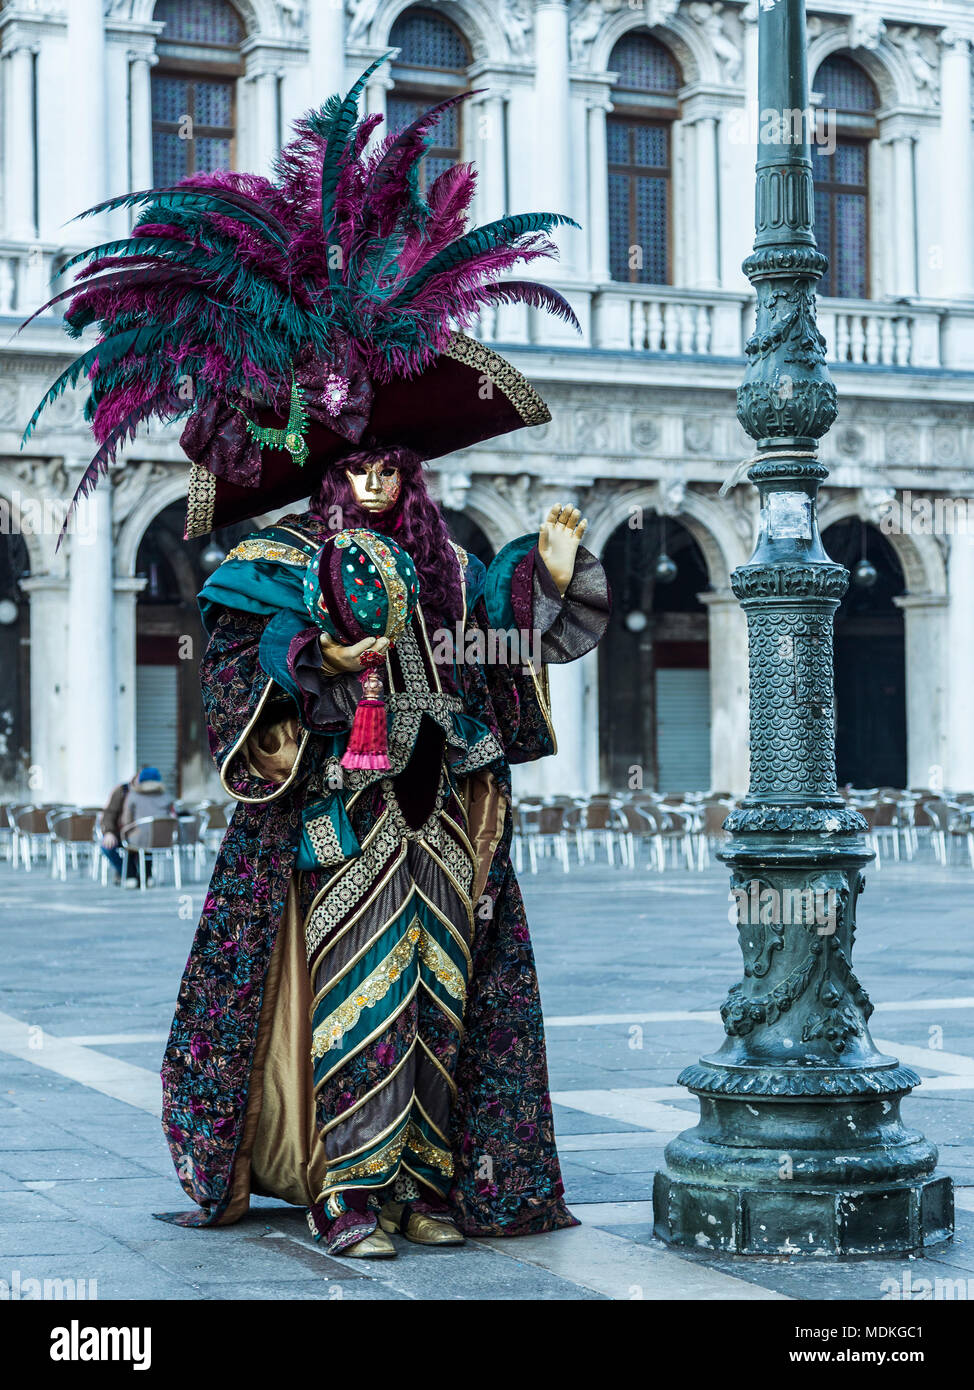 Carnaval de Venecia, trajes, máscaras, baile de máscaras, Febrero, Piazza San Marco, la Plaza de San Marcos Foto de stock